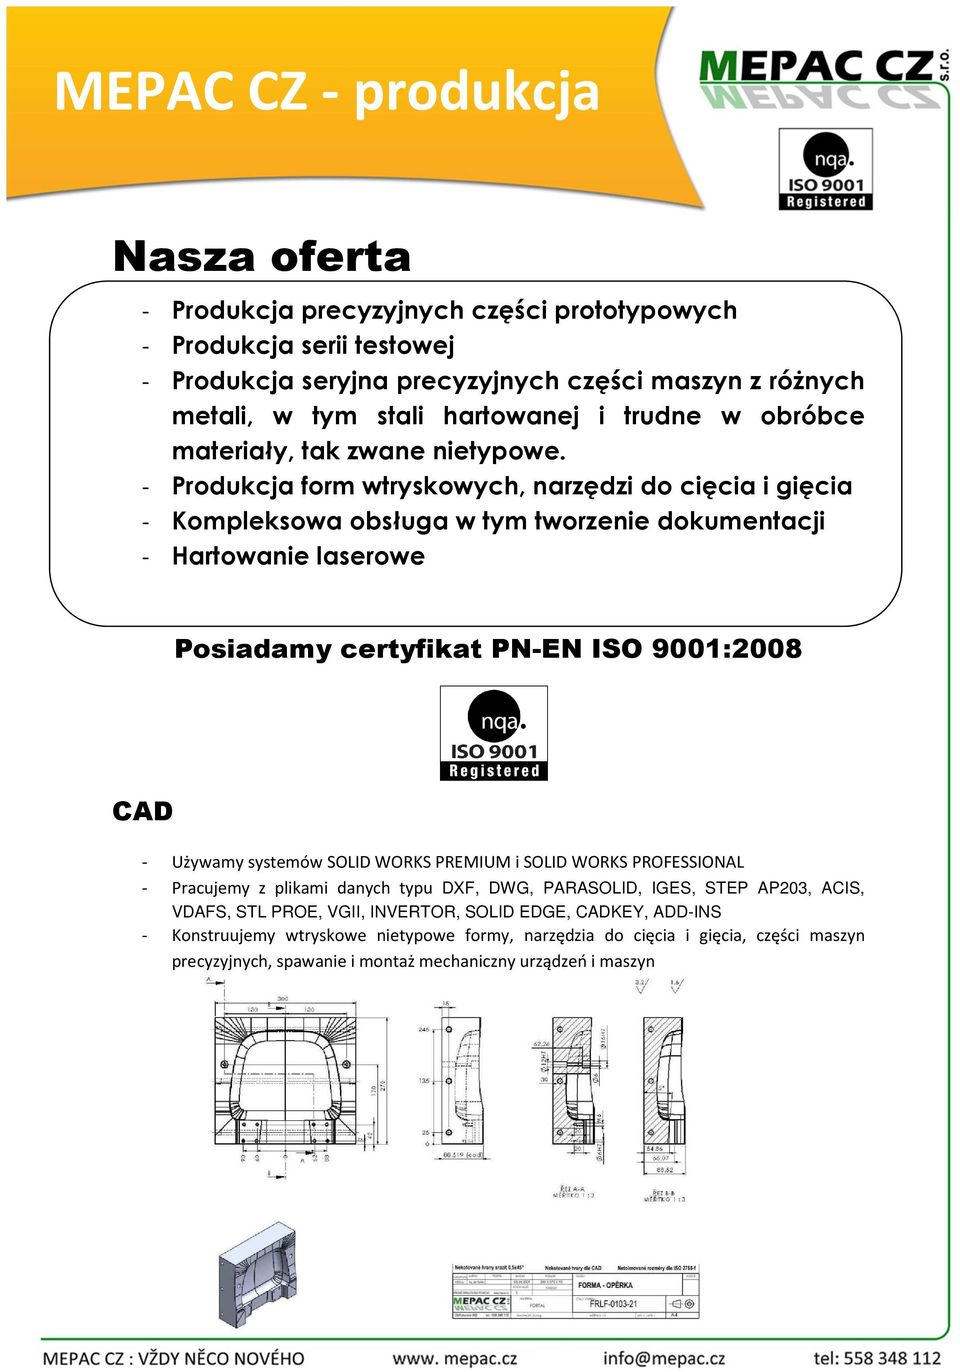 - Produkcja form wtryskowych, narzędzi do cięcia i gięcia - Kompleksowa obsługa w tym tworzenie dokumentacji - Hartowanie laserowe Posiadamy certyfikat PN-EN ISO 9001:2008 CAD - Używamy